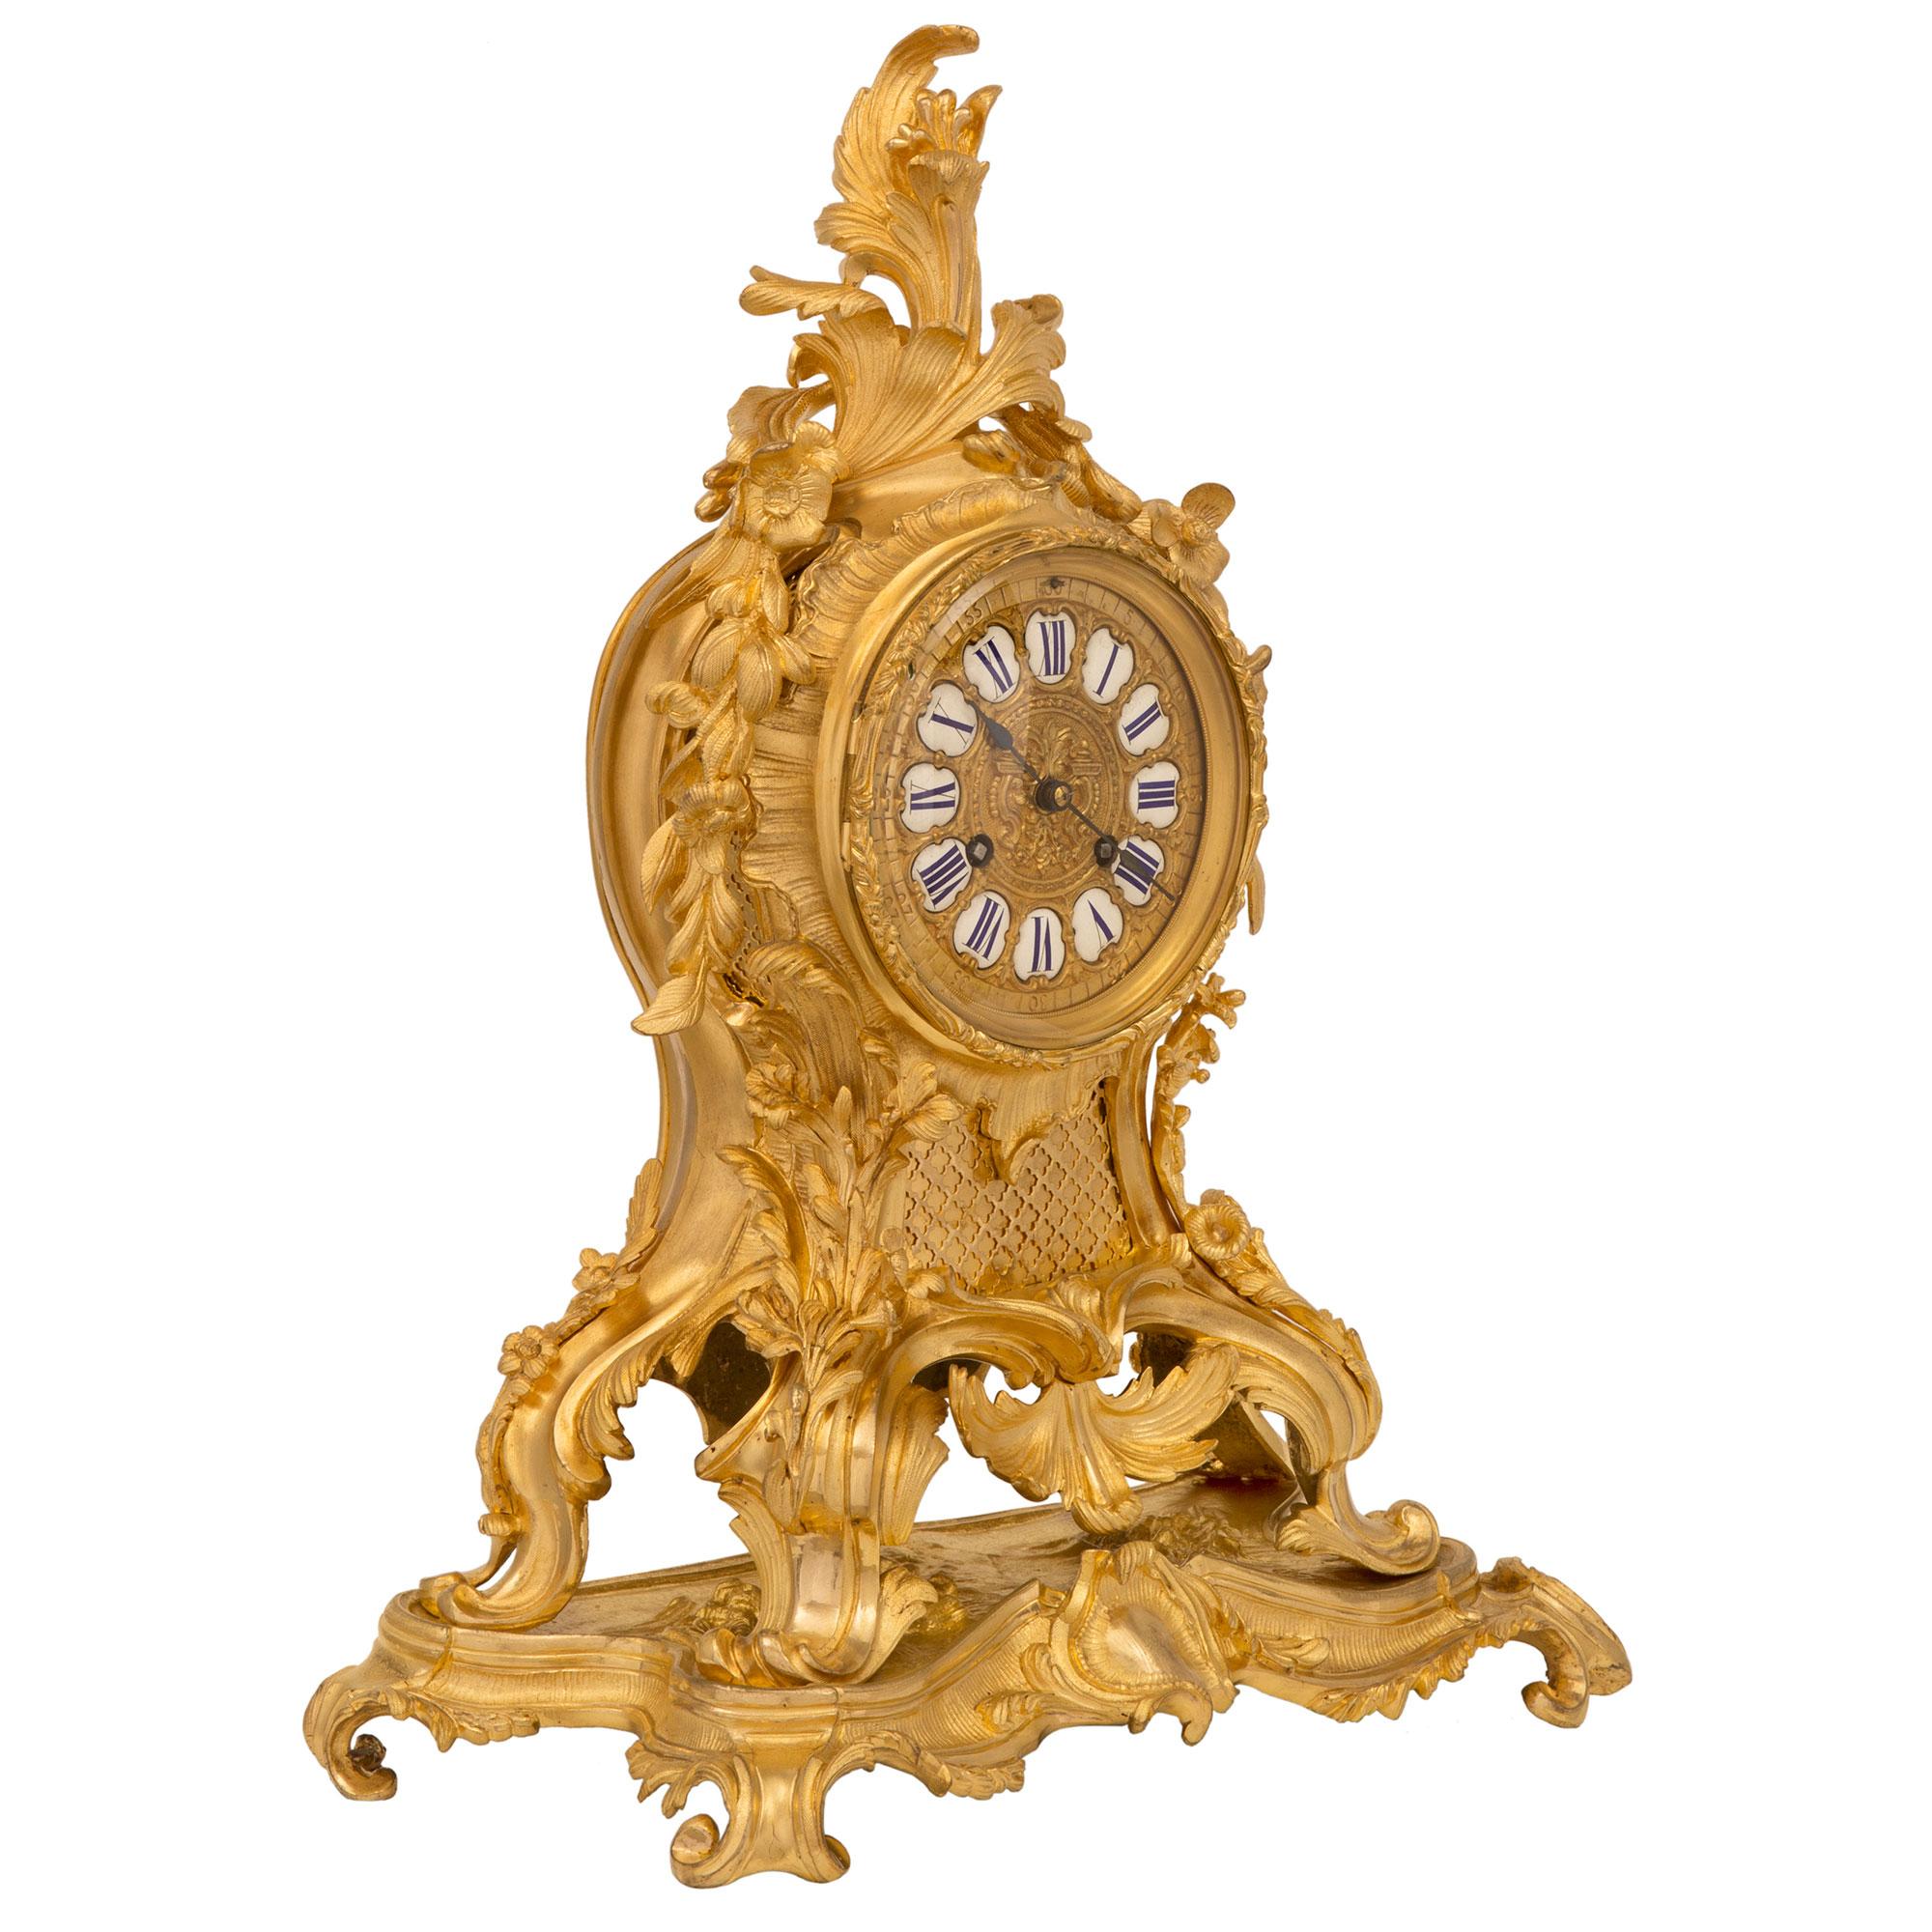 Eine atemberaubende Französisch Mitte des 19. Jahrhunderts Louis XV st. Ormolu Uhr und Kandelaber Garnitur, signiert Barrand & Vignon Horlogerie, Paris. Die Uhr ruht auf einem eleganten Sockel im Rocaille-Stil mit einem zarten, geriffelten Muster